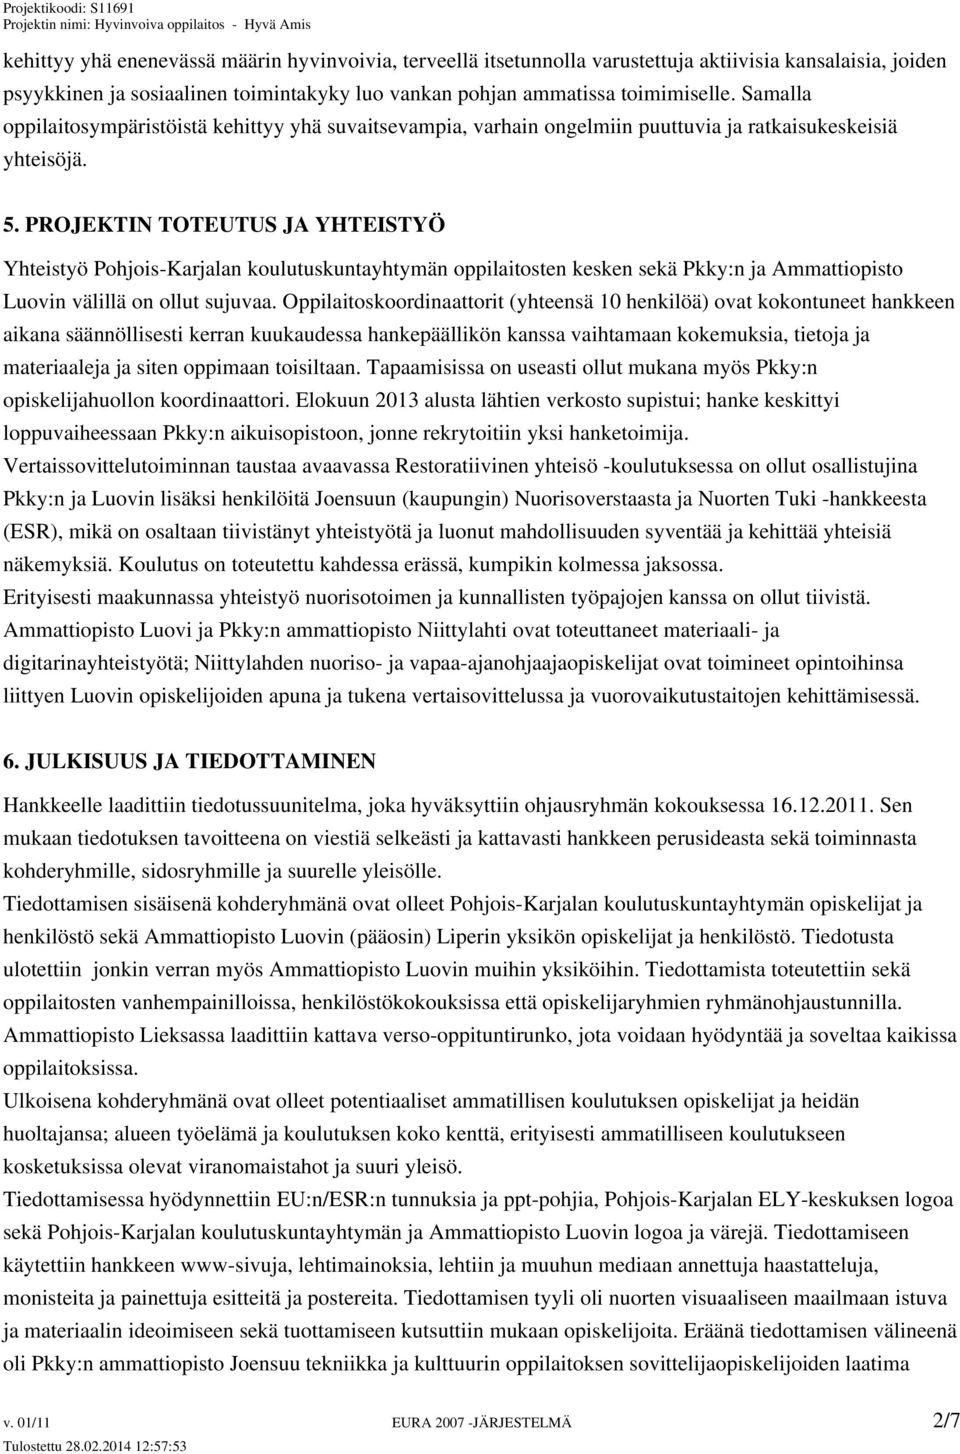 PROJEKTIN TOTEUTUS JA YHTEISTYÖ Yhteistyö Pohjois-Karjalan koulutuskuntayhtymän oppilaitosten kesken sekä Pkky:n ja Ammattiopisto Luovin välillä on ollut sujuvaa.